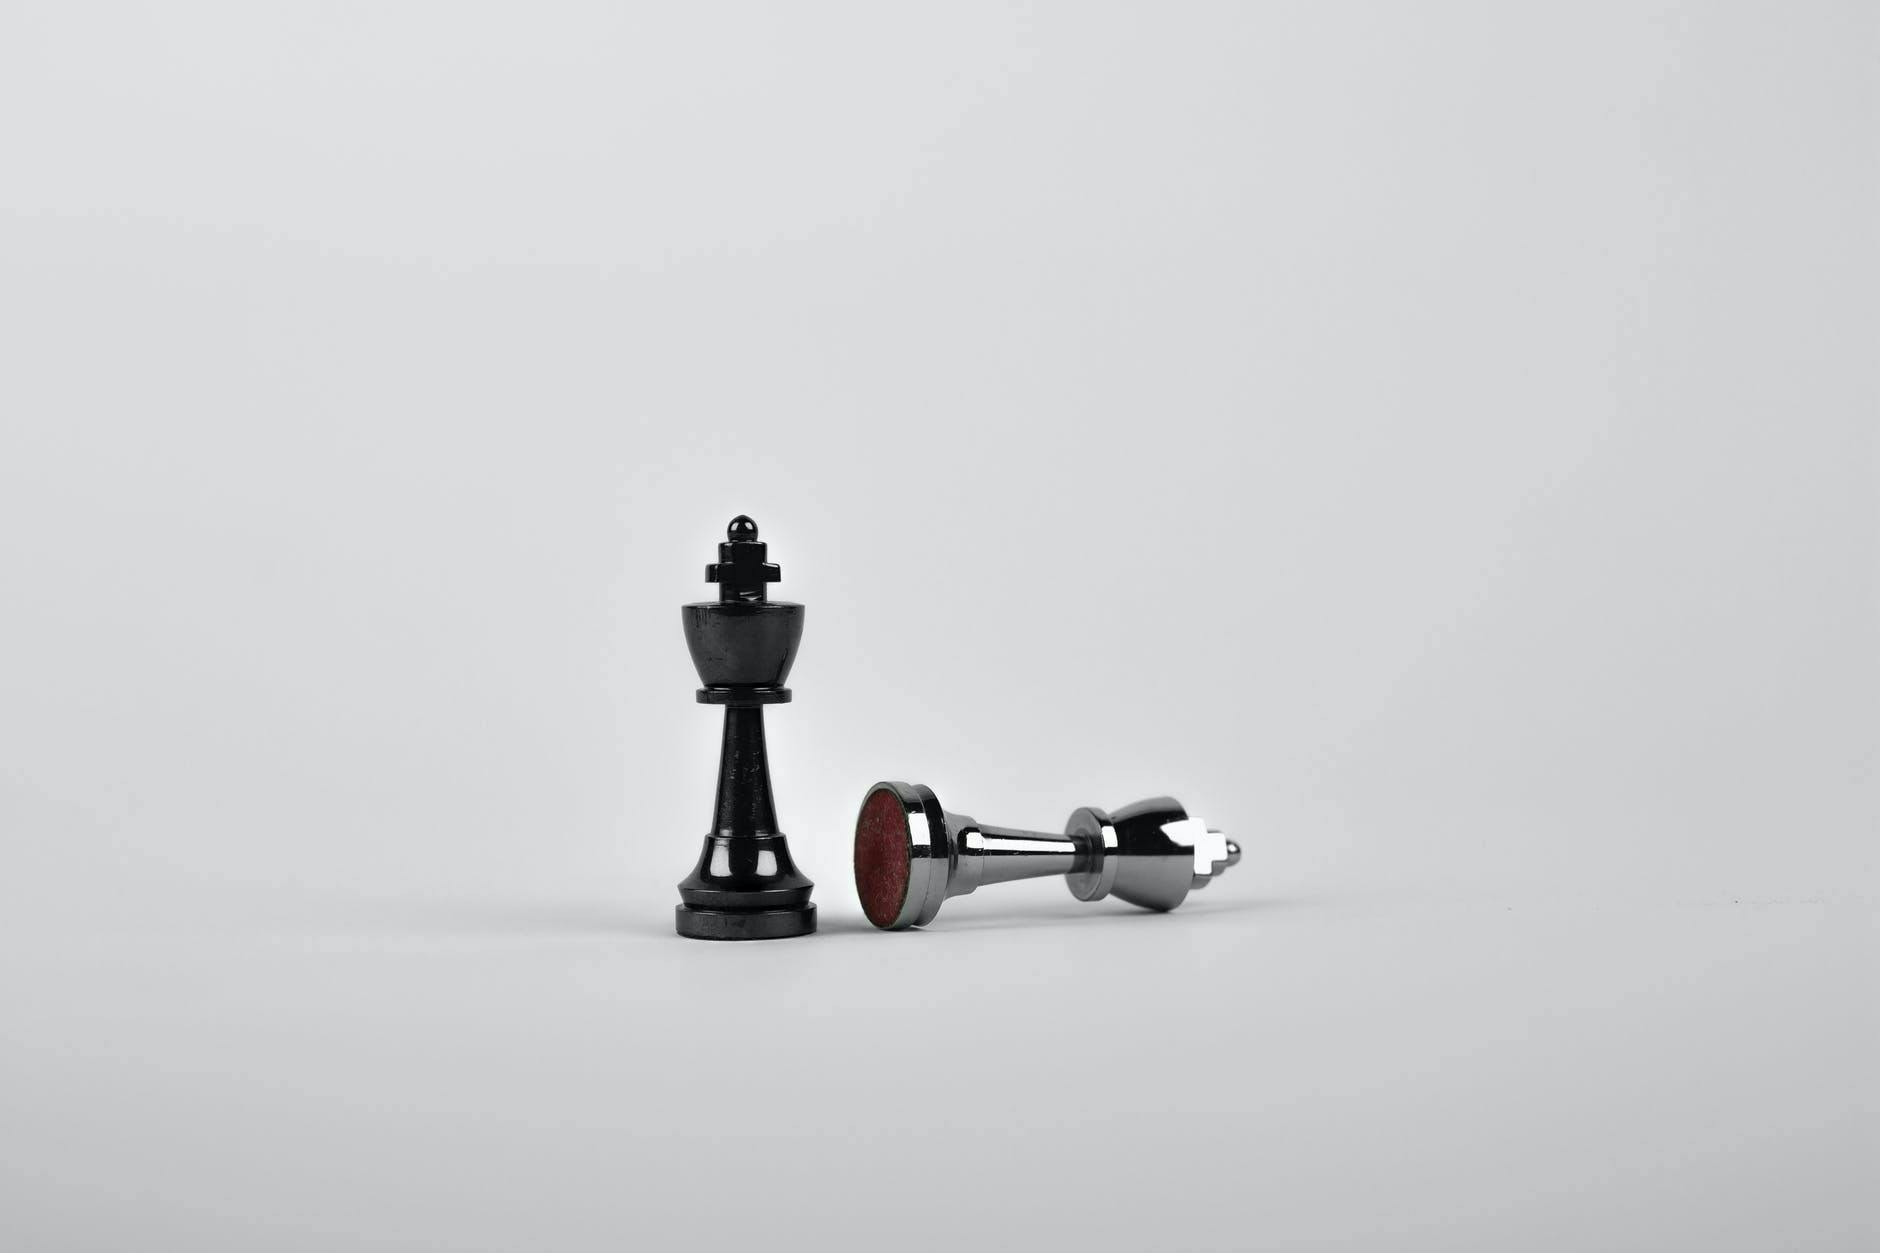 Een schaakspel met twee koningen. De ene koning is omgestoten door de anderen. Alles tegen een witte achtergrond.